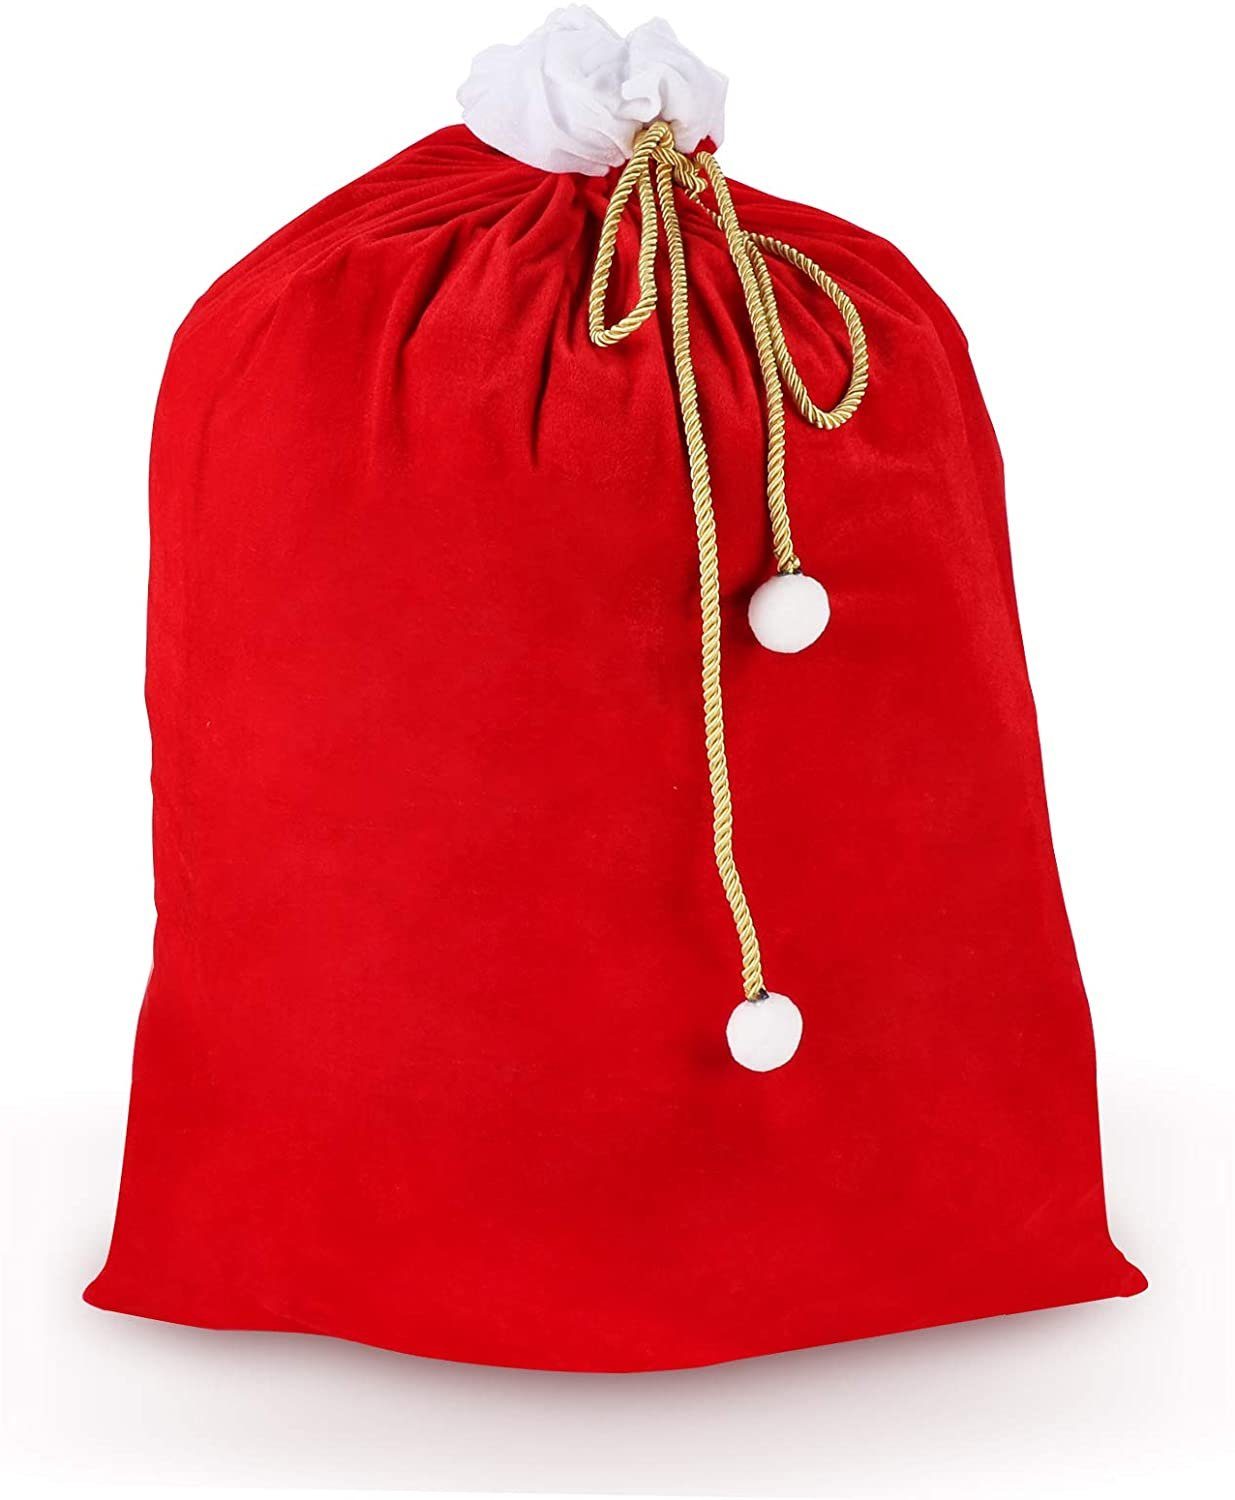 Homewit Christbaumschmuck Geschenksäckchen zu Weihnachten mit Zugband (1-tlg), Weihnachtssack aus Samt mit goldfarbener Kordel mit weißen Bommeln Rot